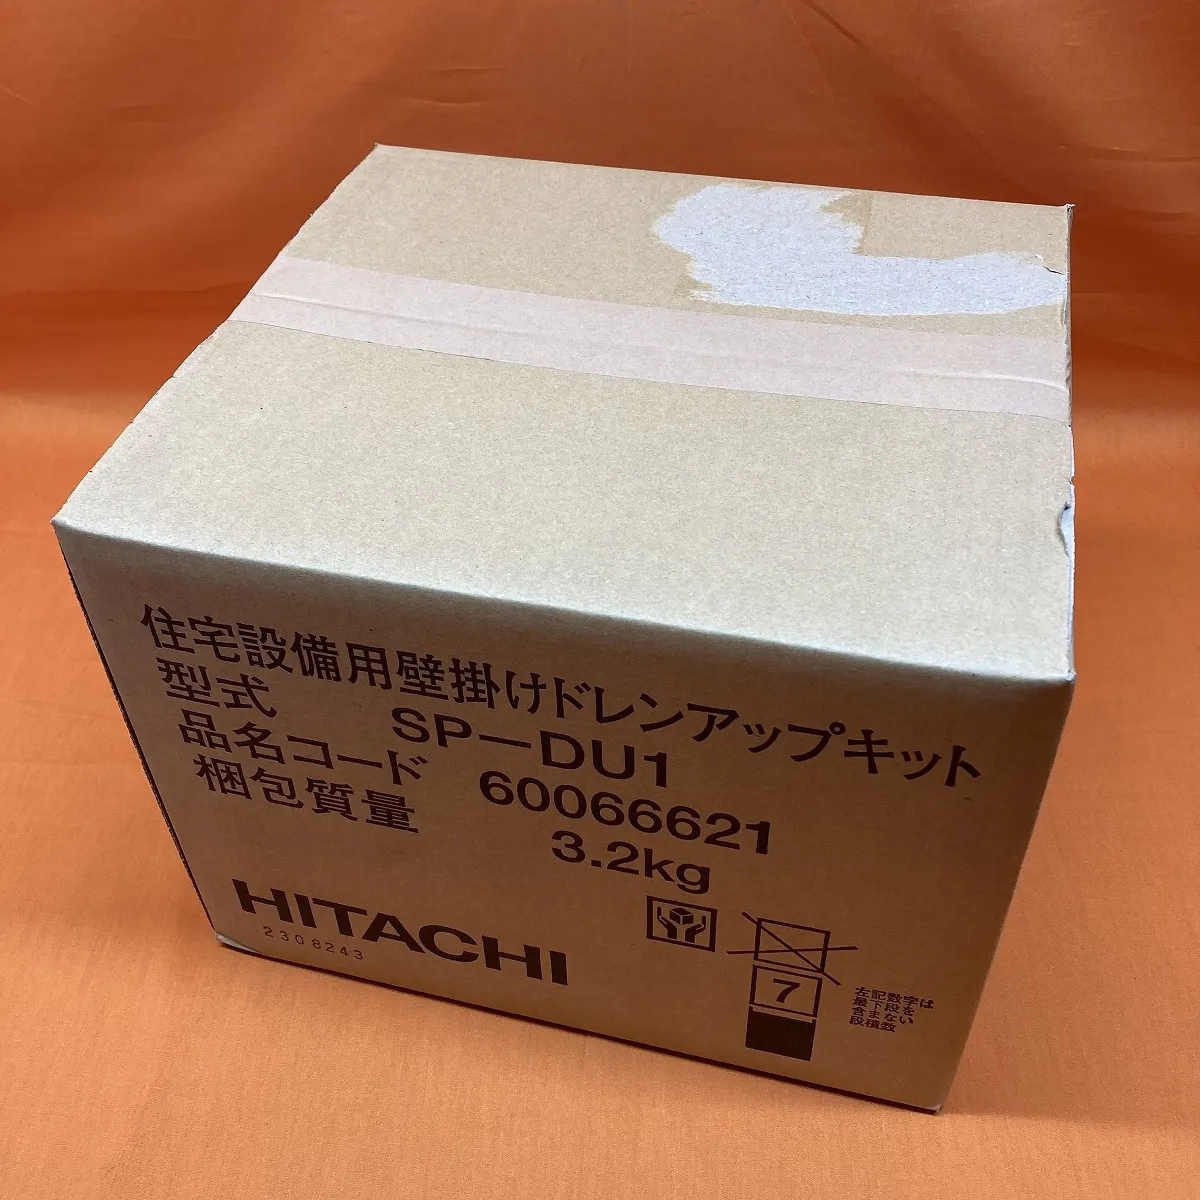 ドレンアップキット 型式:SP-DU1 HITACHI - エアコン